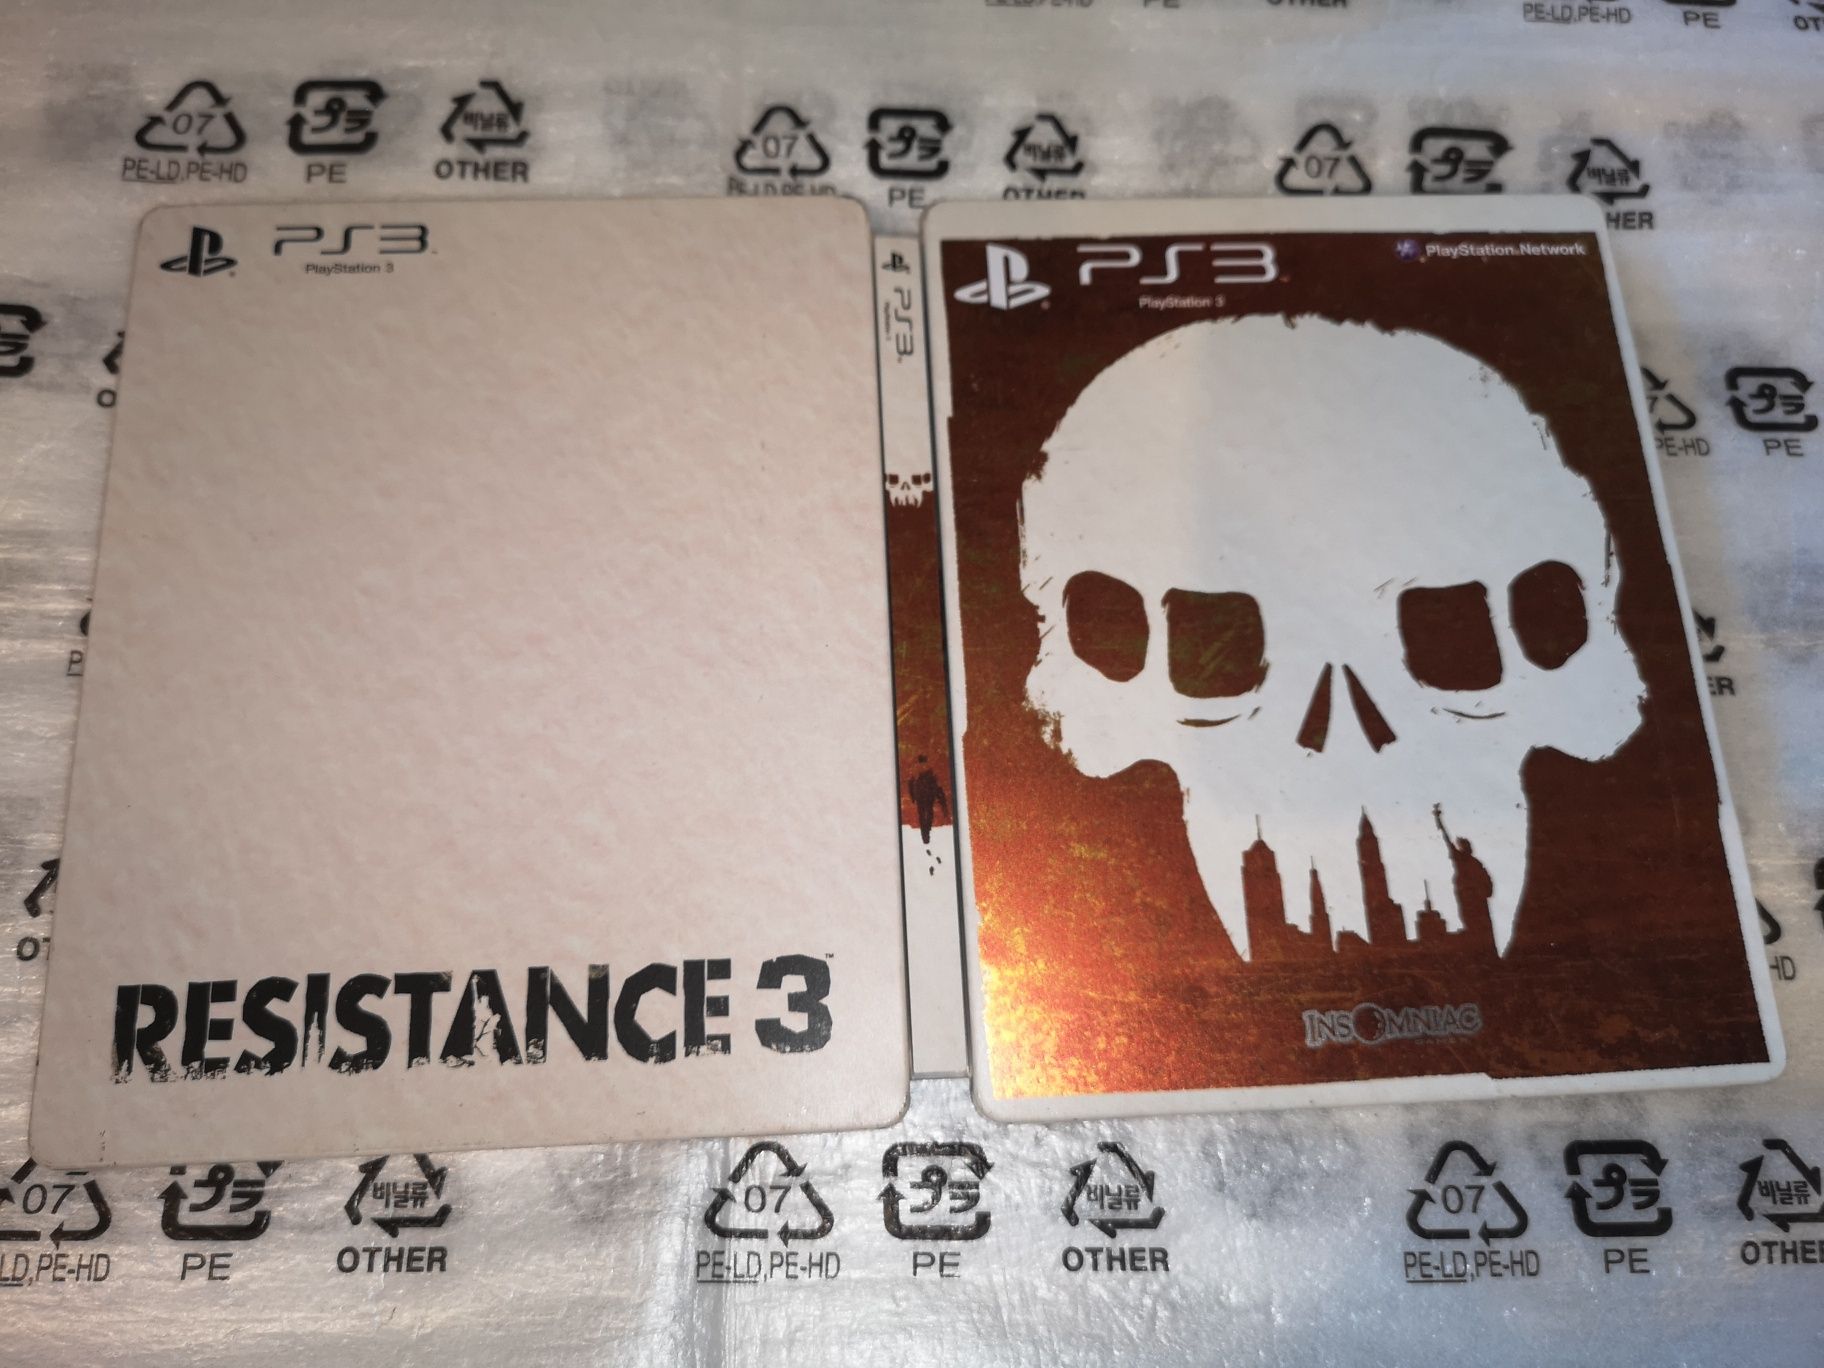 Resistance 3 PS3 gra + steelbook 3xPL (rzadkość na rynku) TANIO